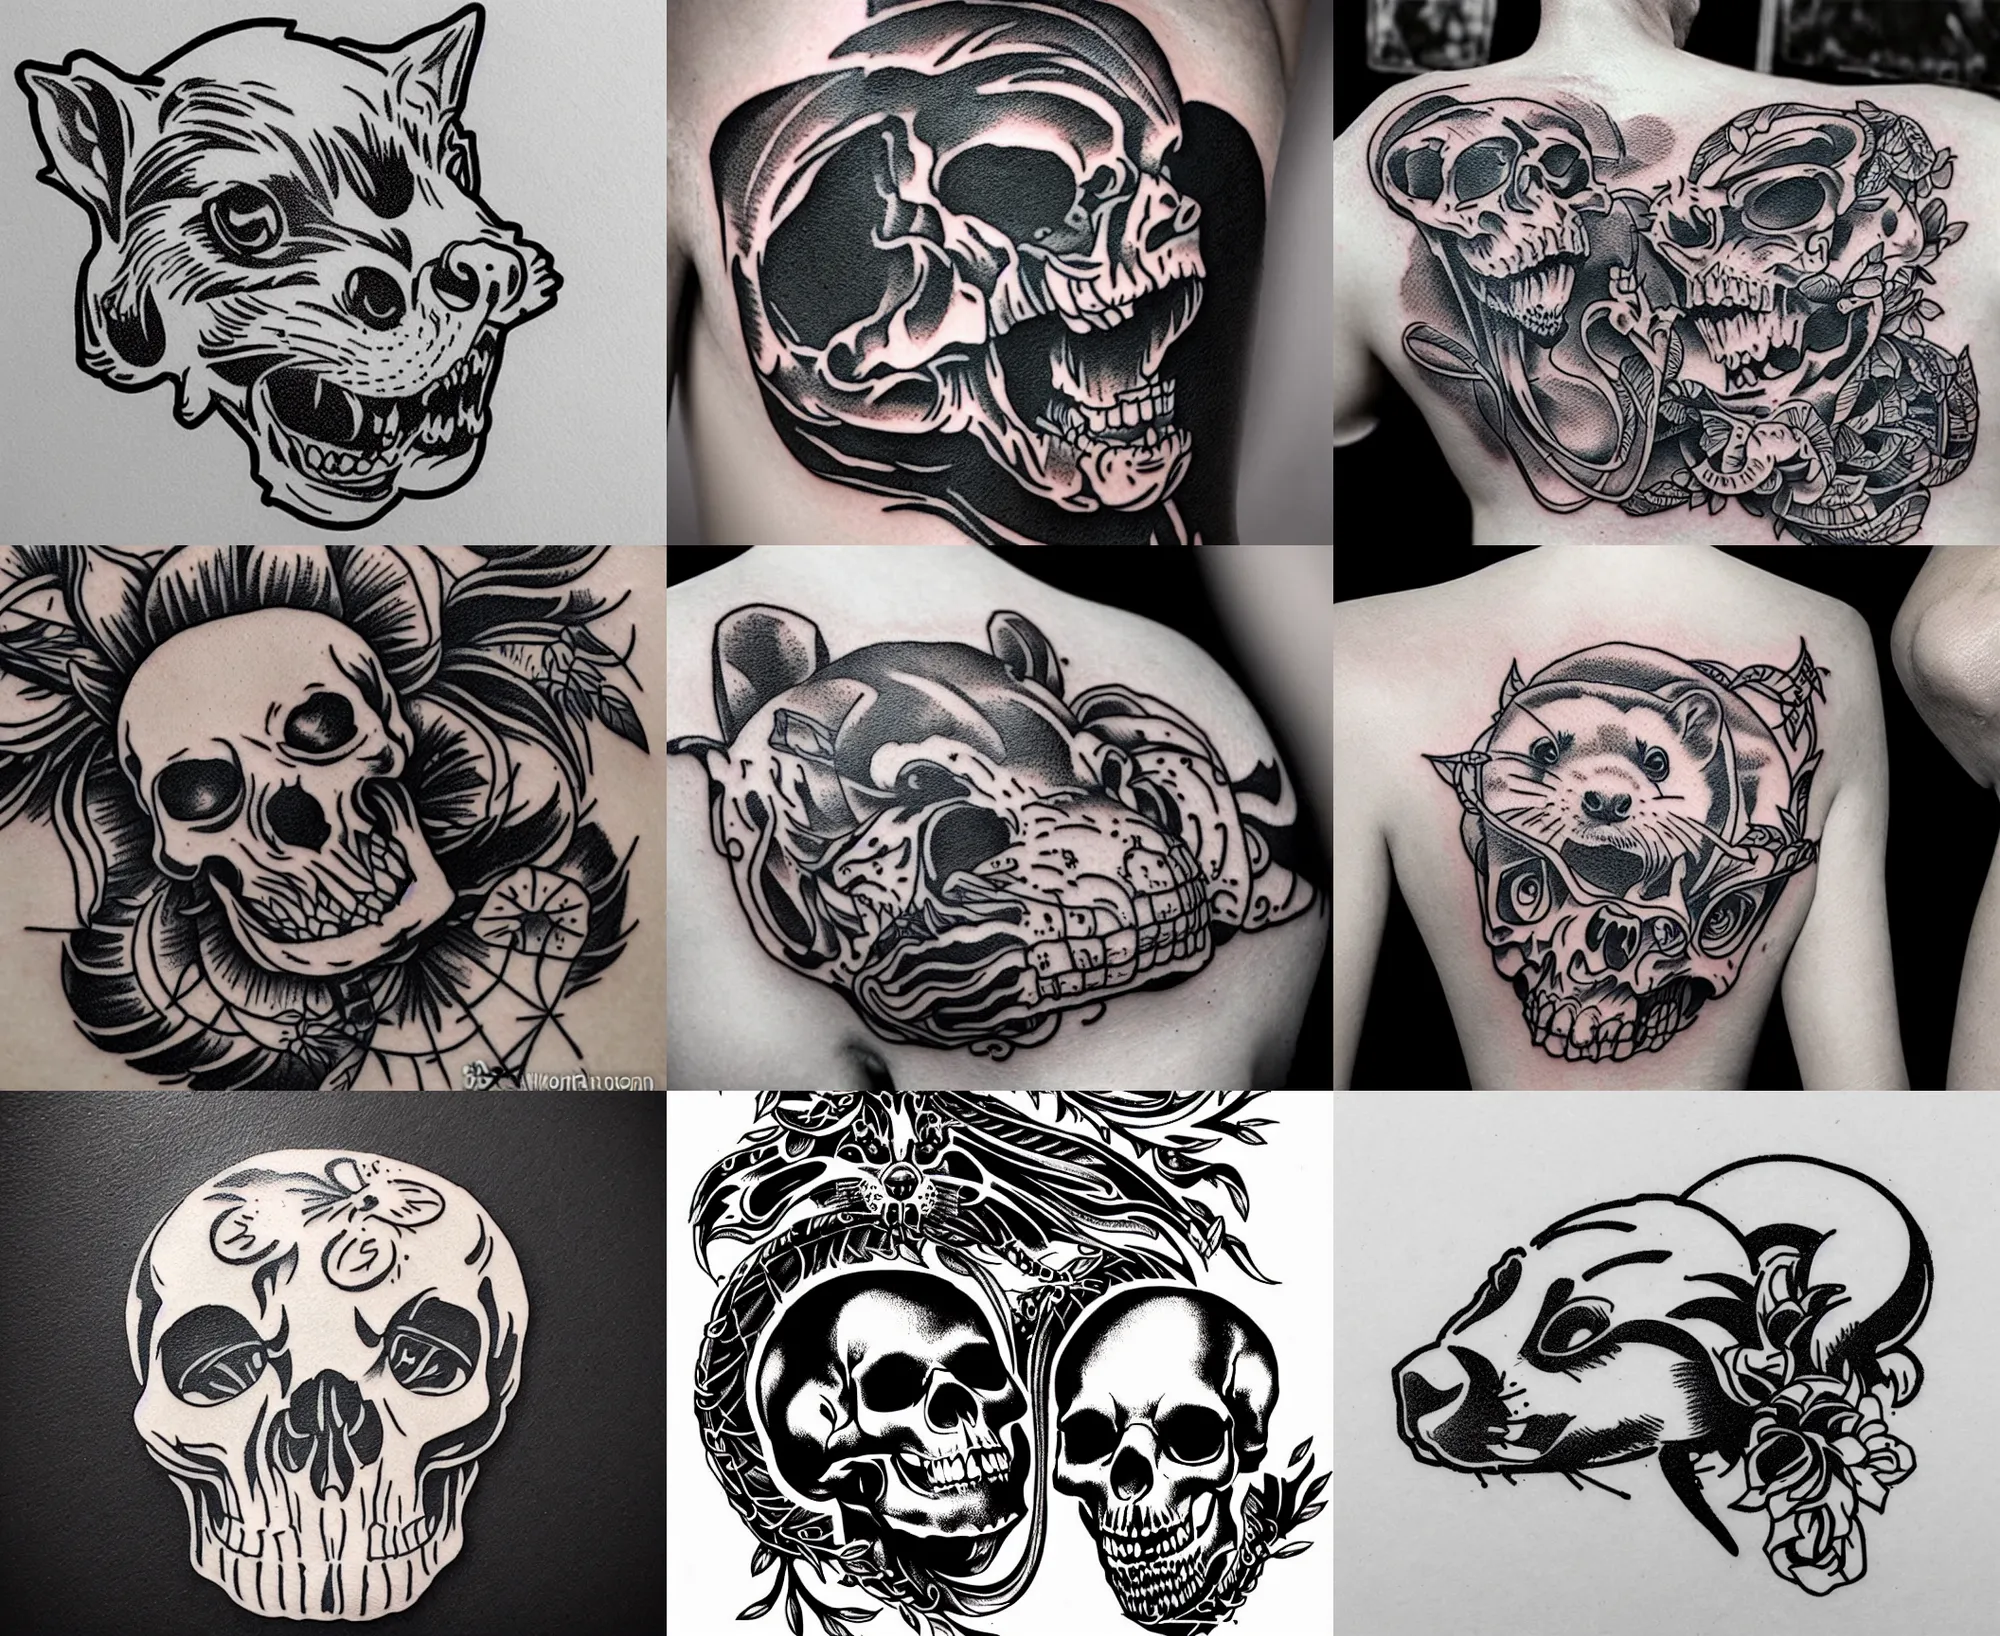 Prompt: detailed tattoo stencil, ferret crawling on human skull